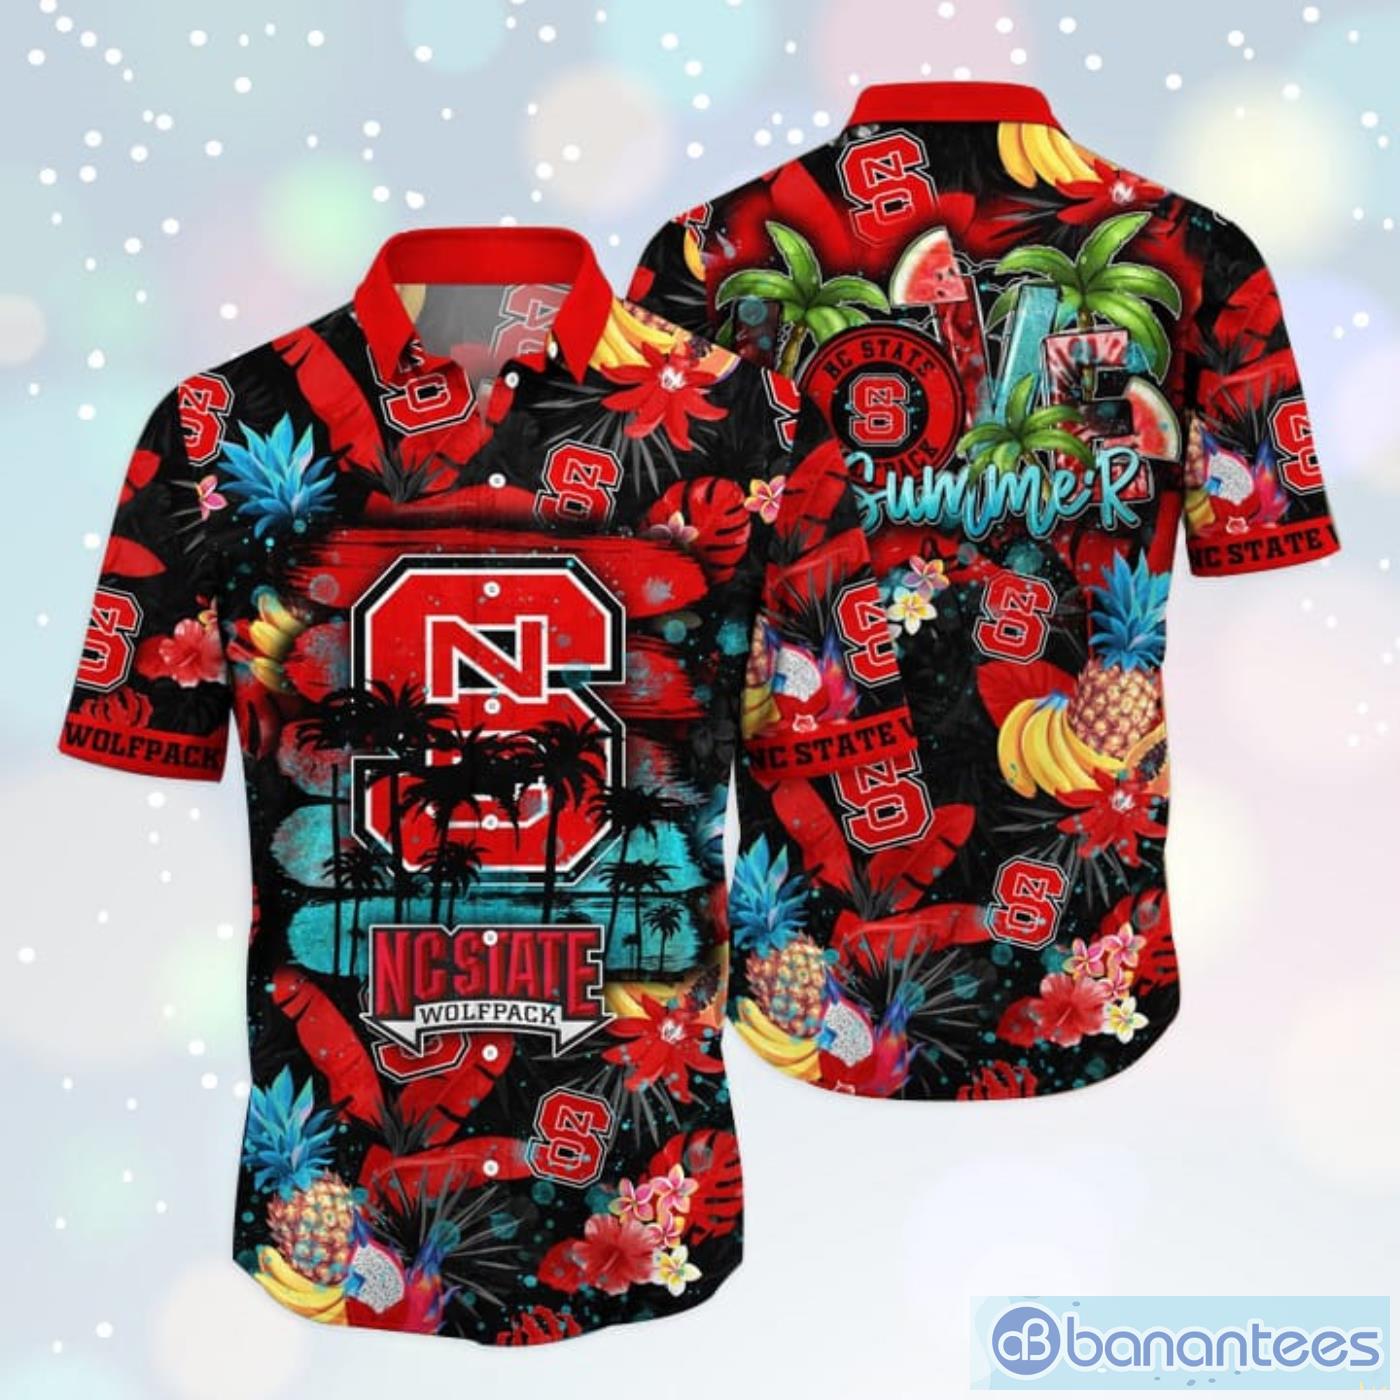 NC State Wolfpack NCAA3 Hawaiian Shirt Star Pattern Best Trend Summer Gift